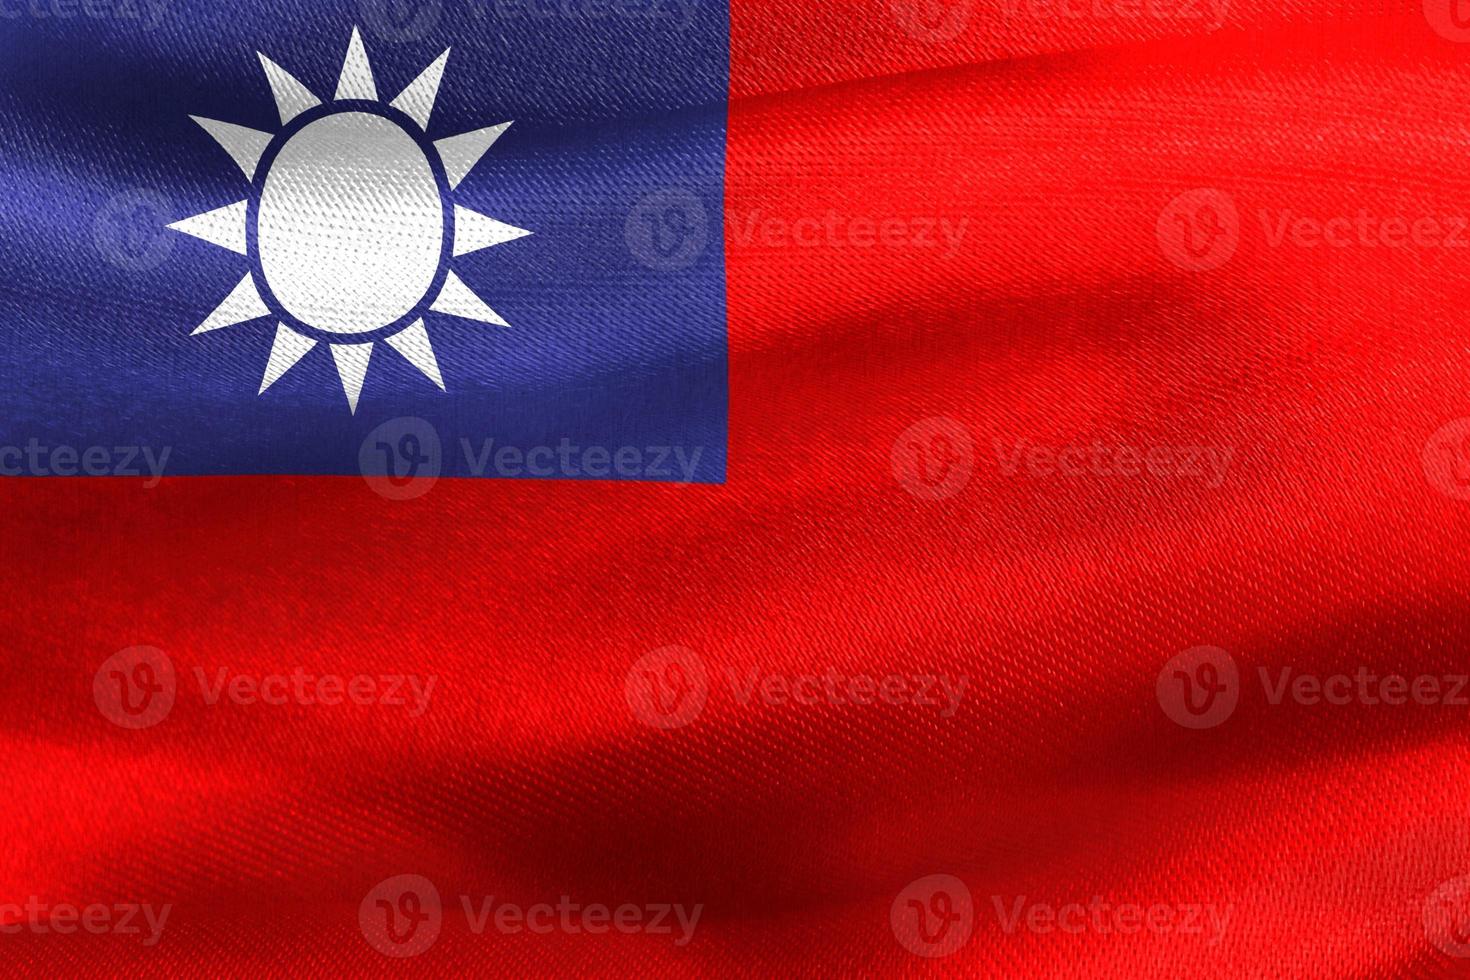 ilustração 3D de uma bandeira de taiwan - bandeira de tecido acenando realista foto